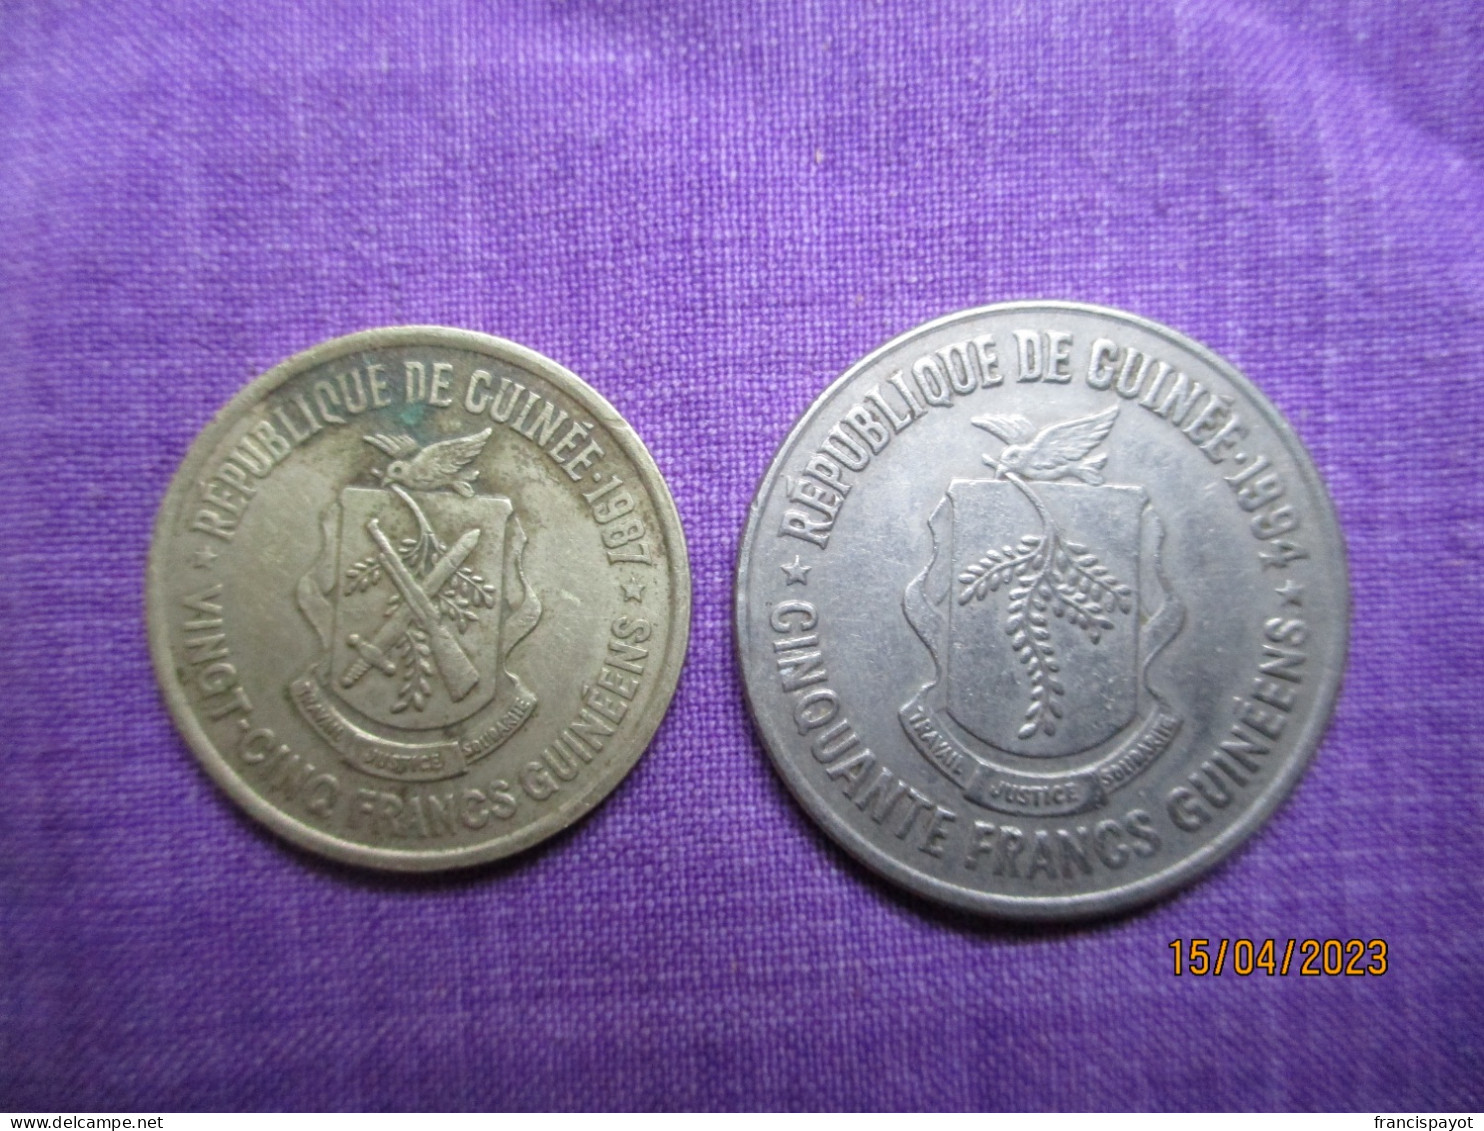 République De Guinée: 50 Francs 1994 & 25 Francs 1987 - Guinea